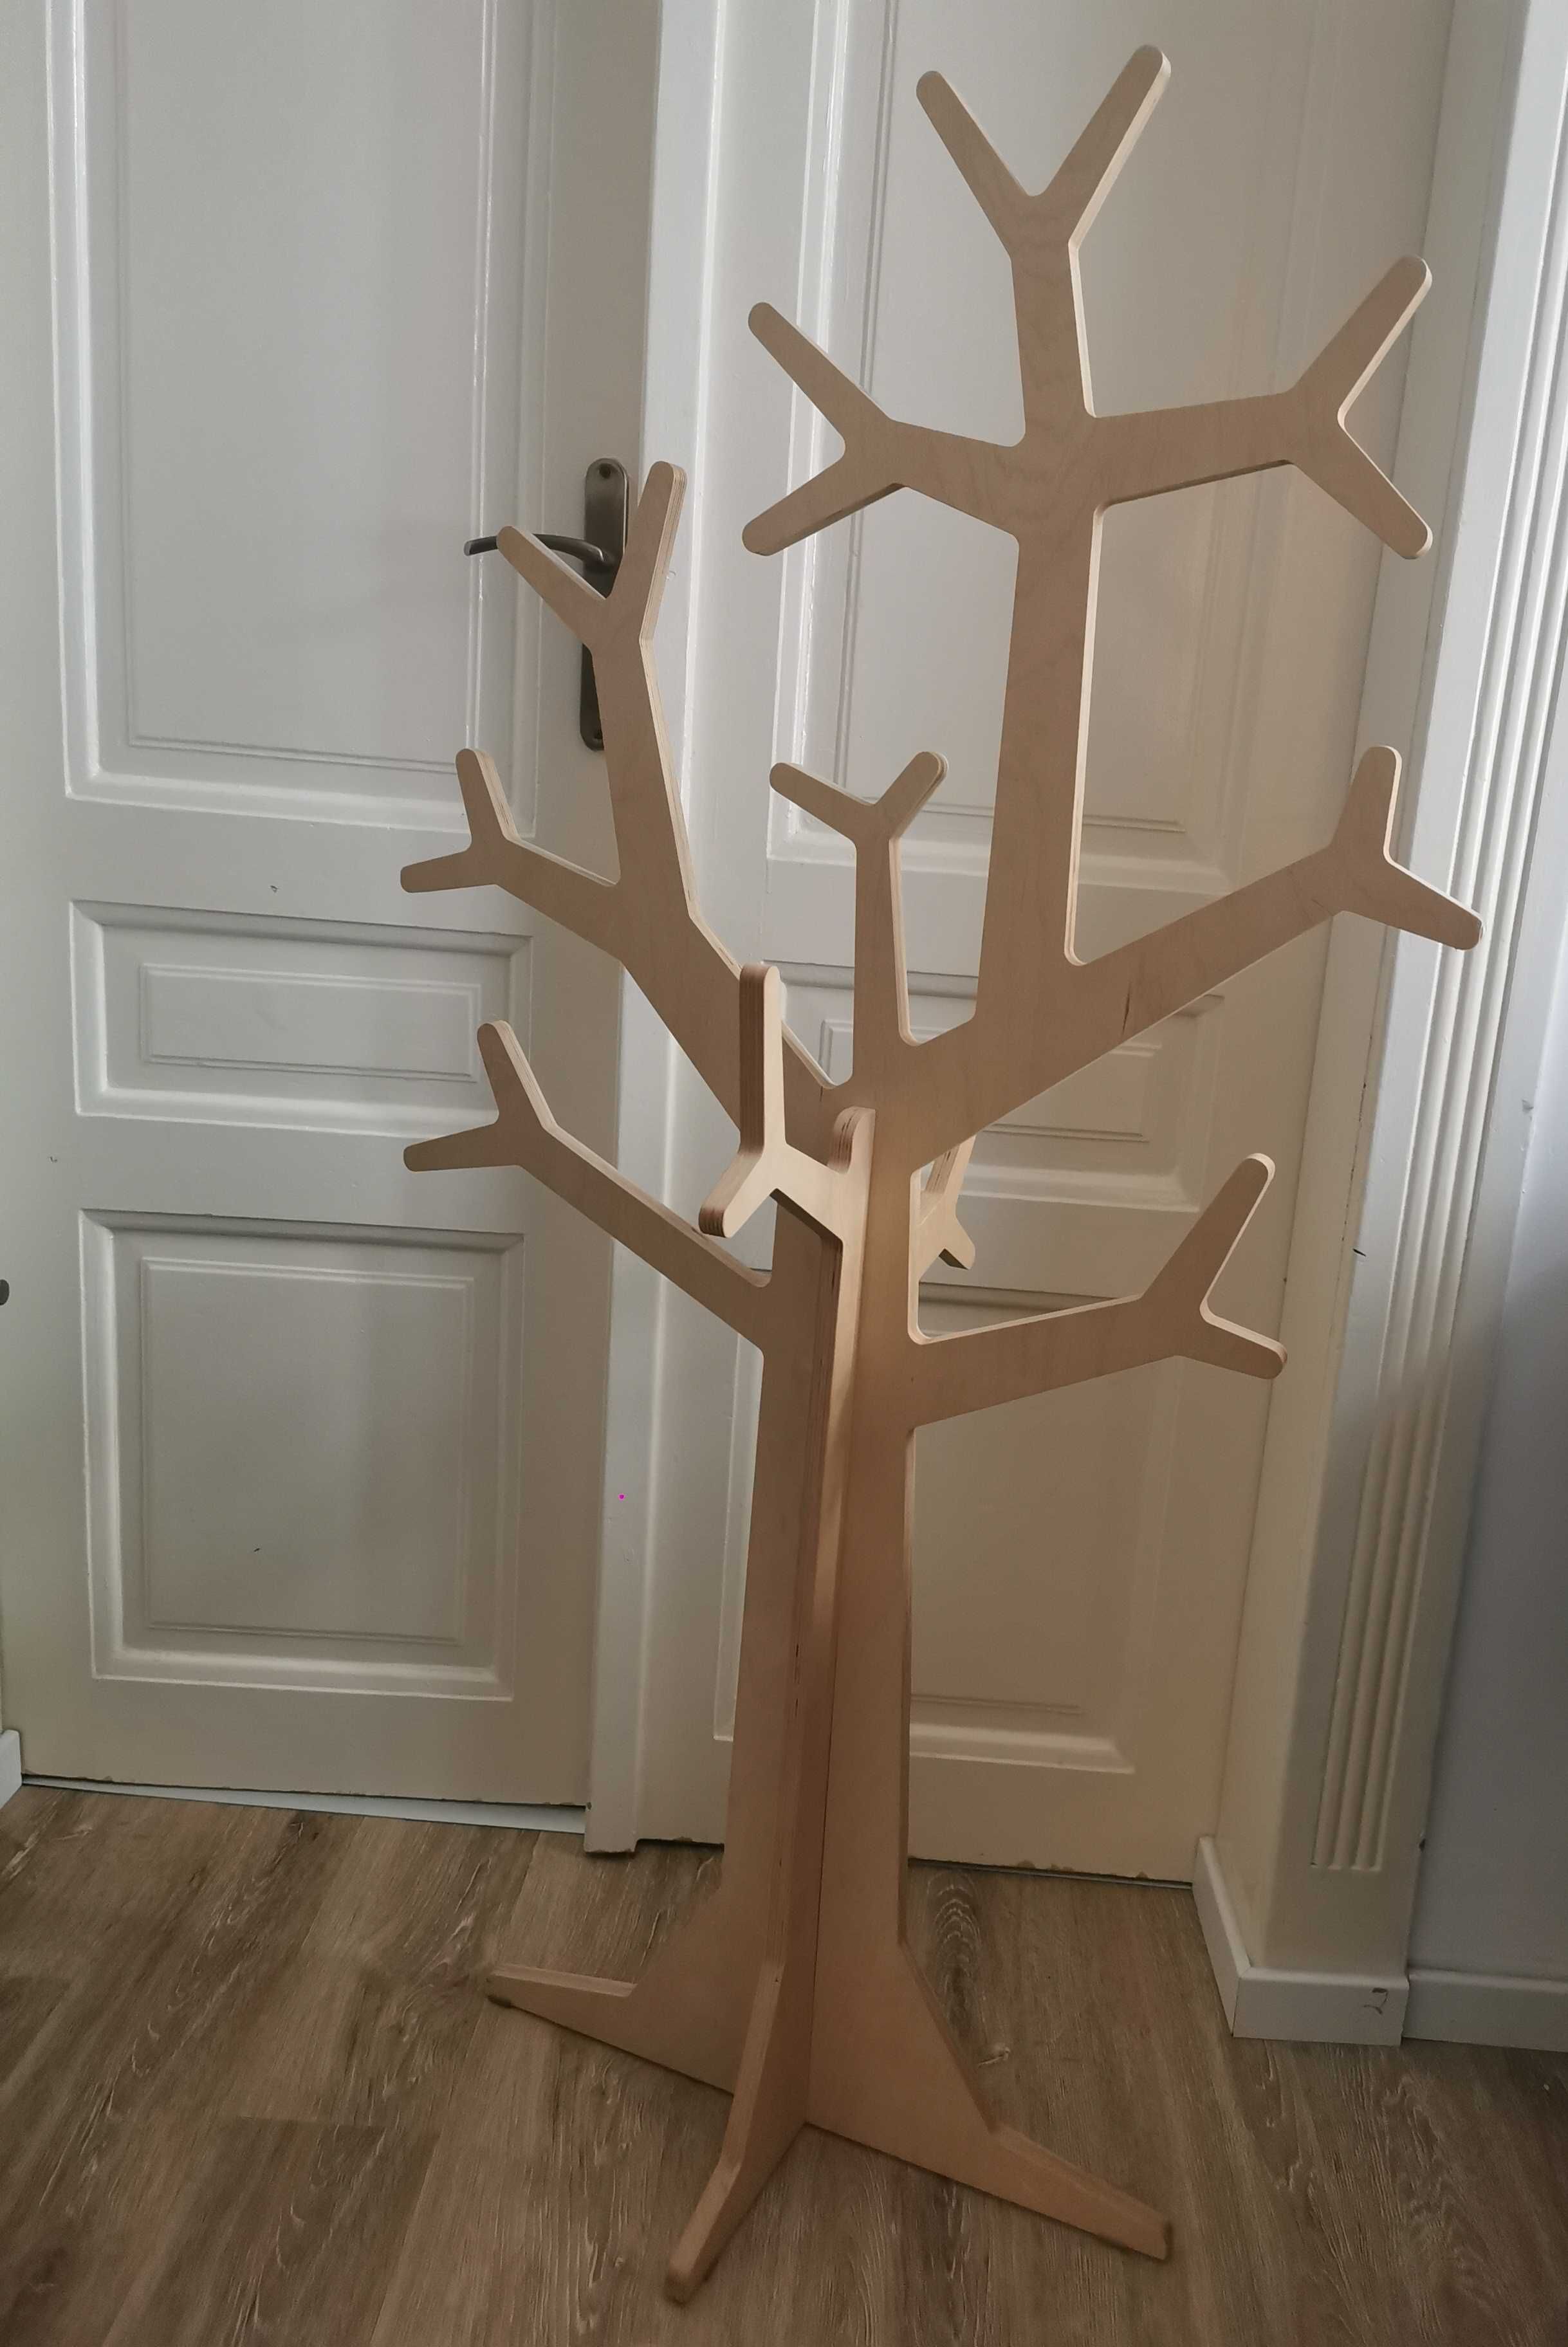 Cuier /deco /copac de lemn pentru copii